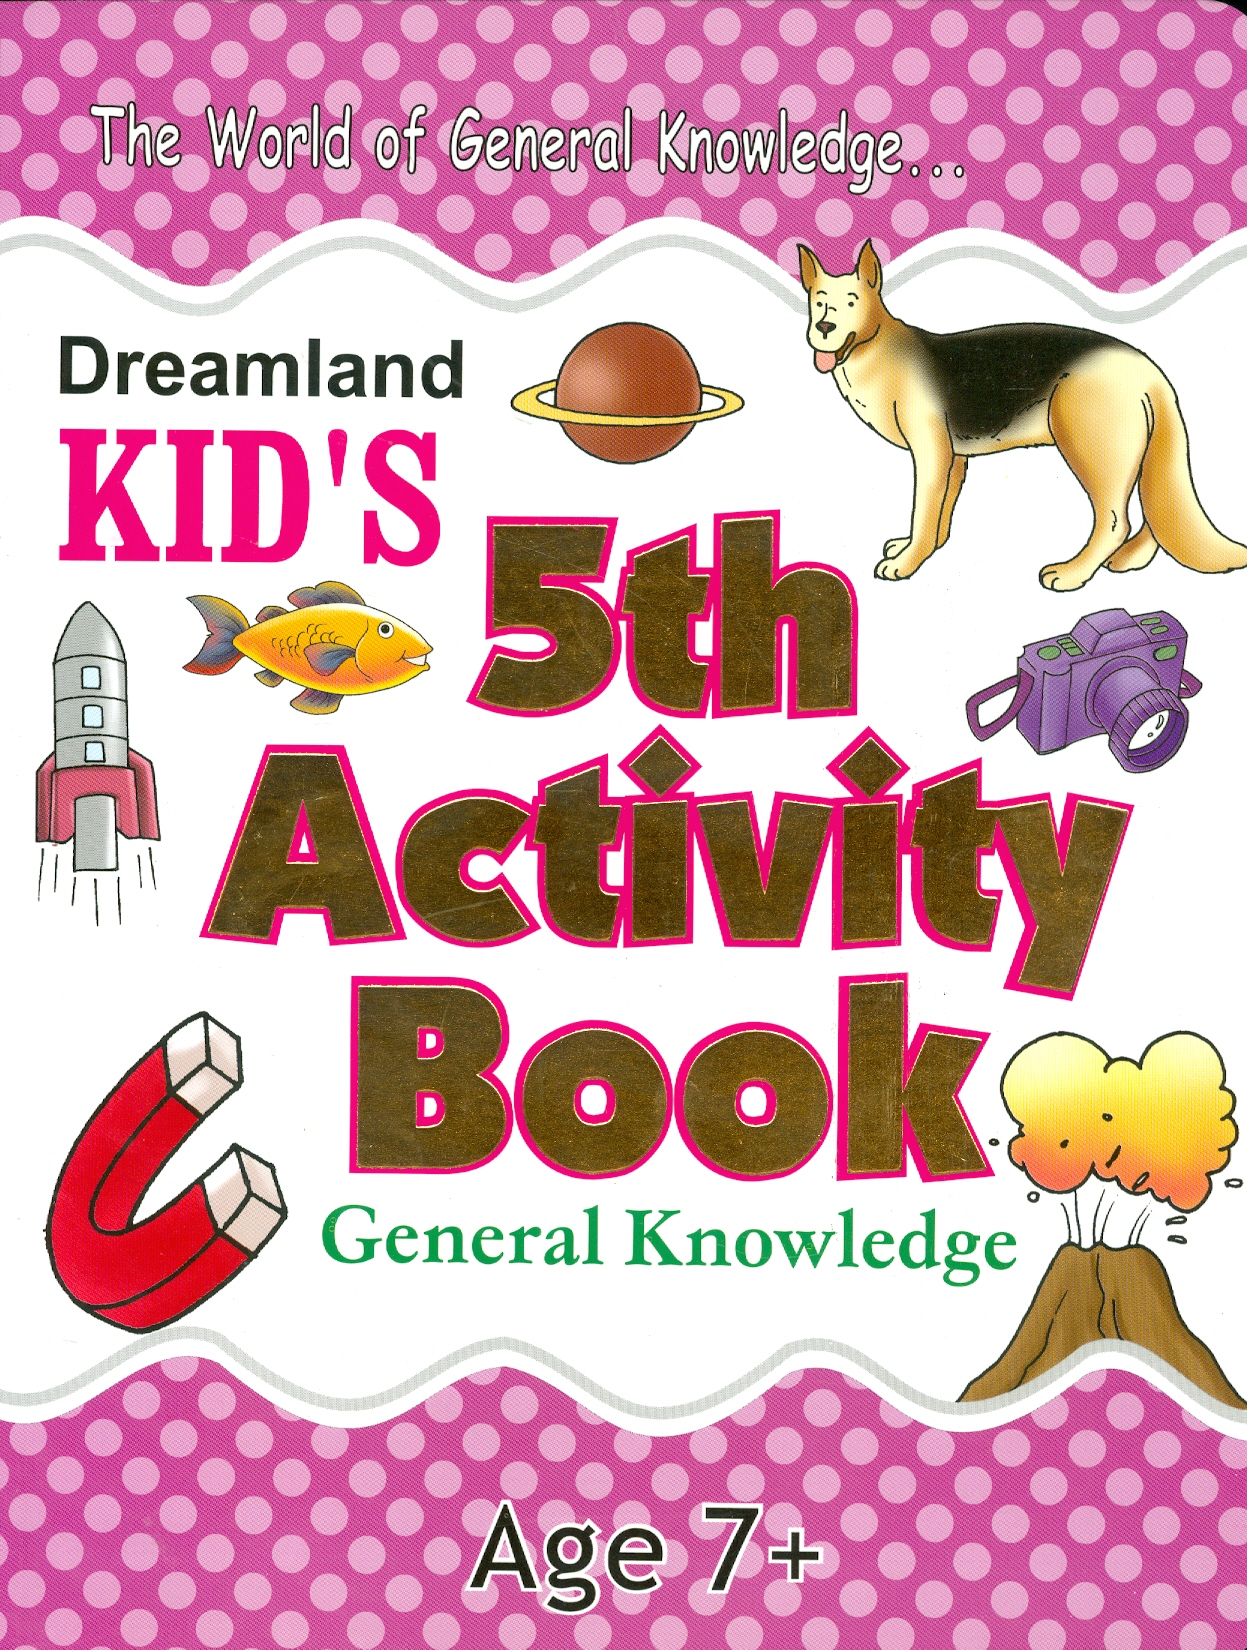 Kid's 5th Activity Book General Knowledge - The World Of General Knowledge - Age 7+ (Các Hoạt Động Kiến Thức Chung - Kiểm Tra Kiến Thức Thường Thức Cho Bé 7+)